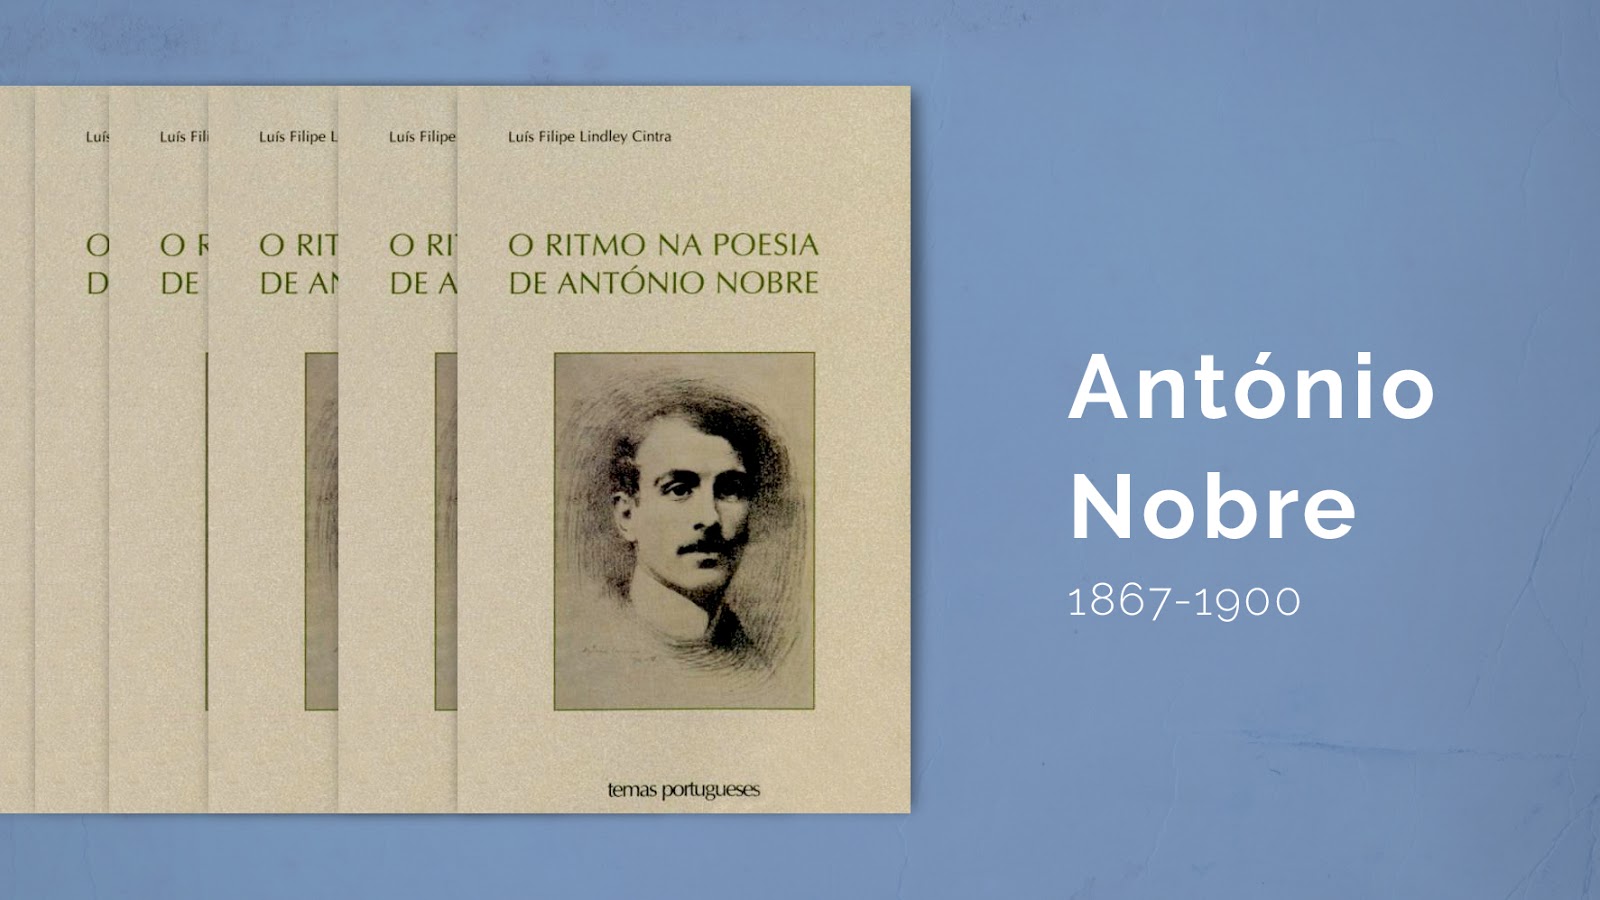 António Nobre (1867-1900)